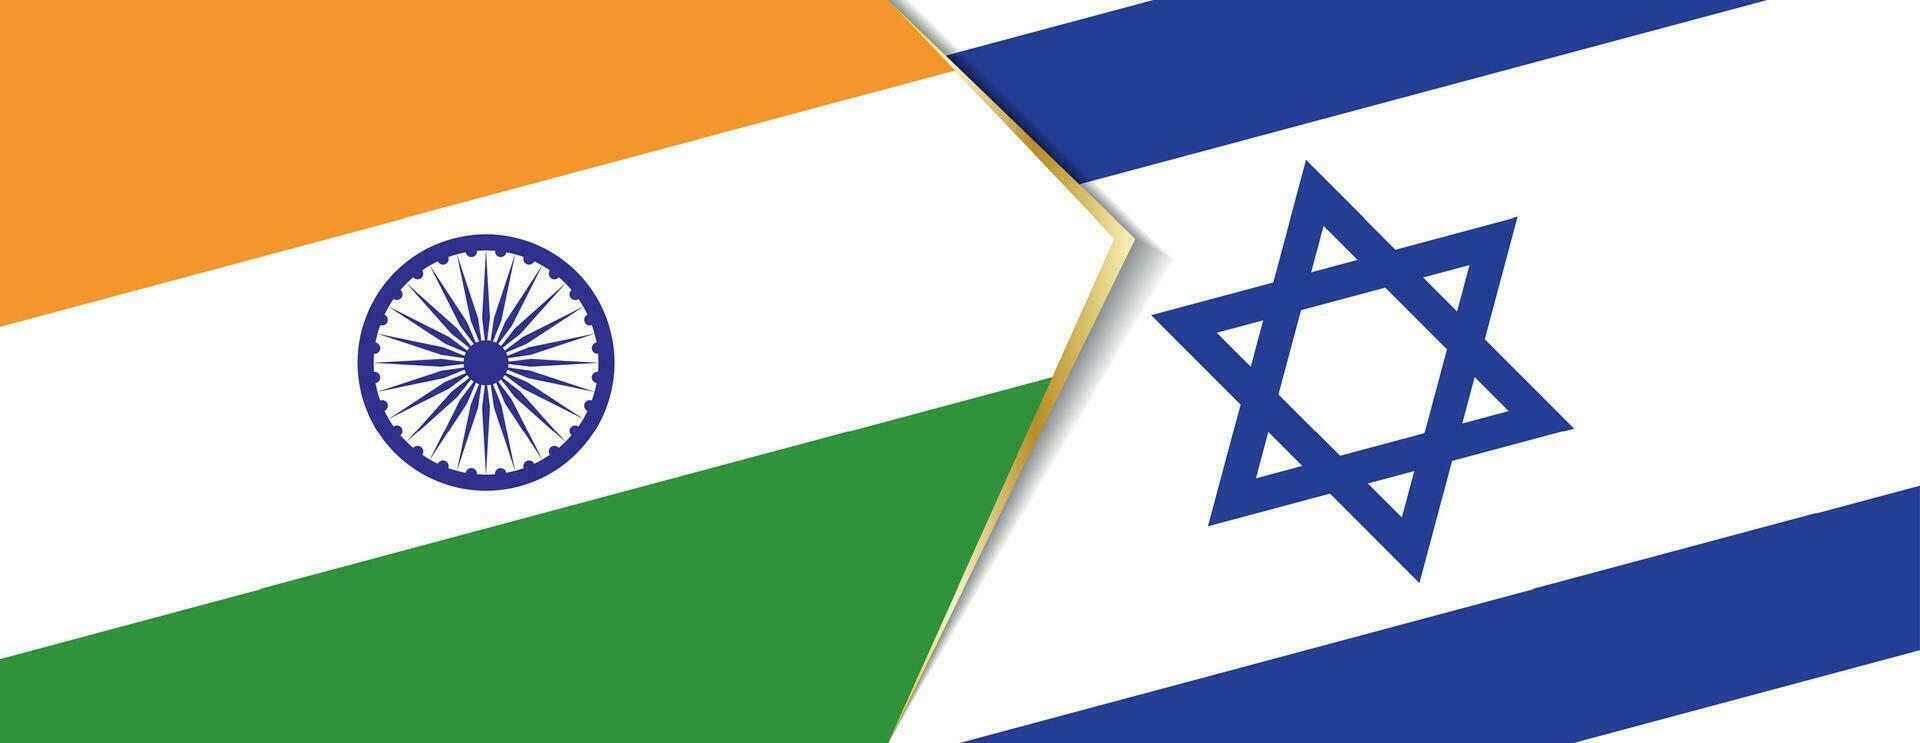 India y Israel banderas, dos vector banderas